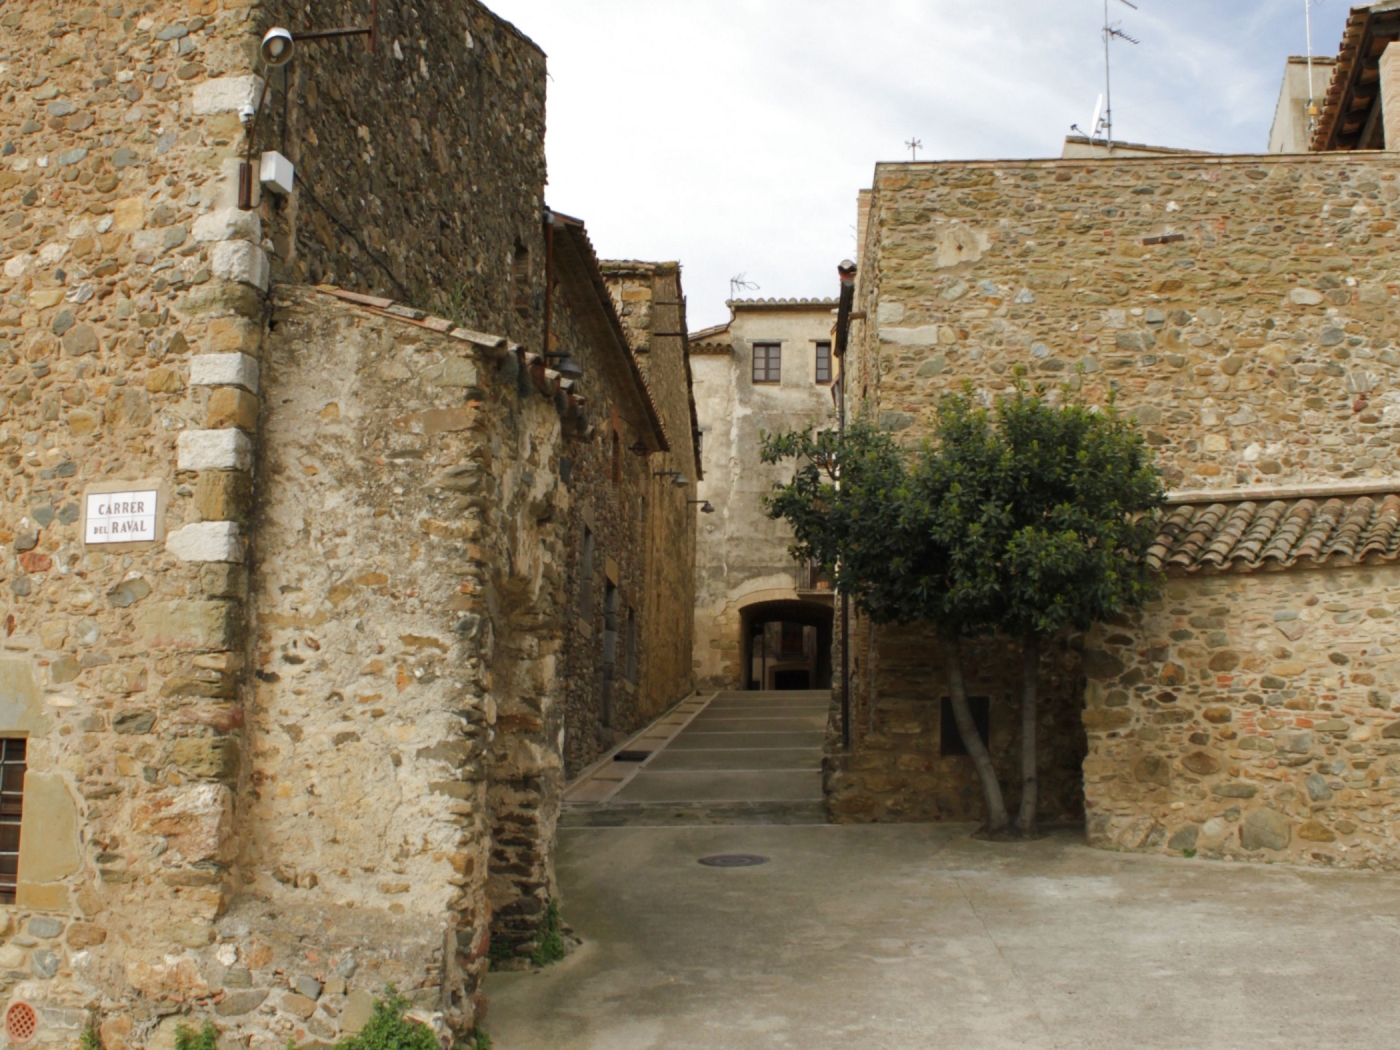 Casa Petita estilo rustico de pueblo medieval cerca de las playas en Cruïlles, Monells i Sant Sadurní de l'Heura